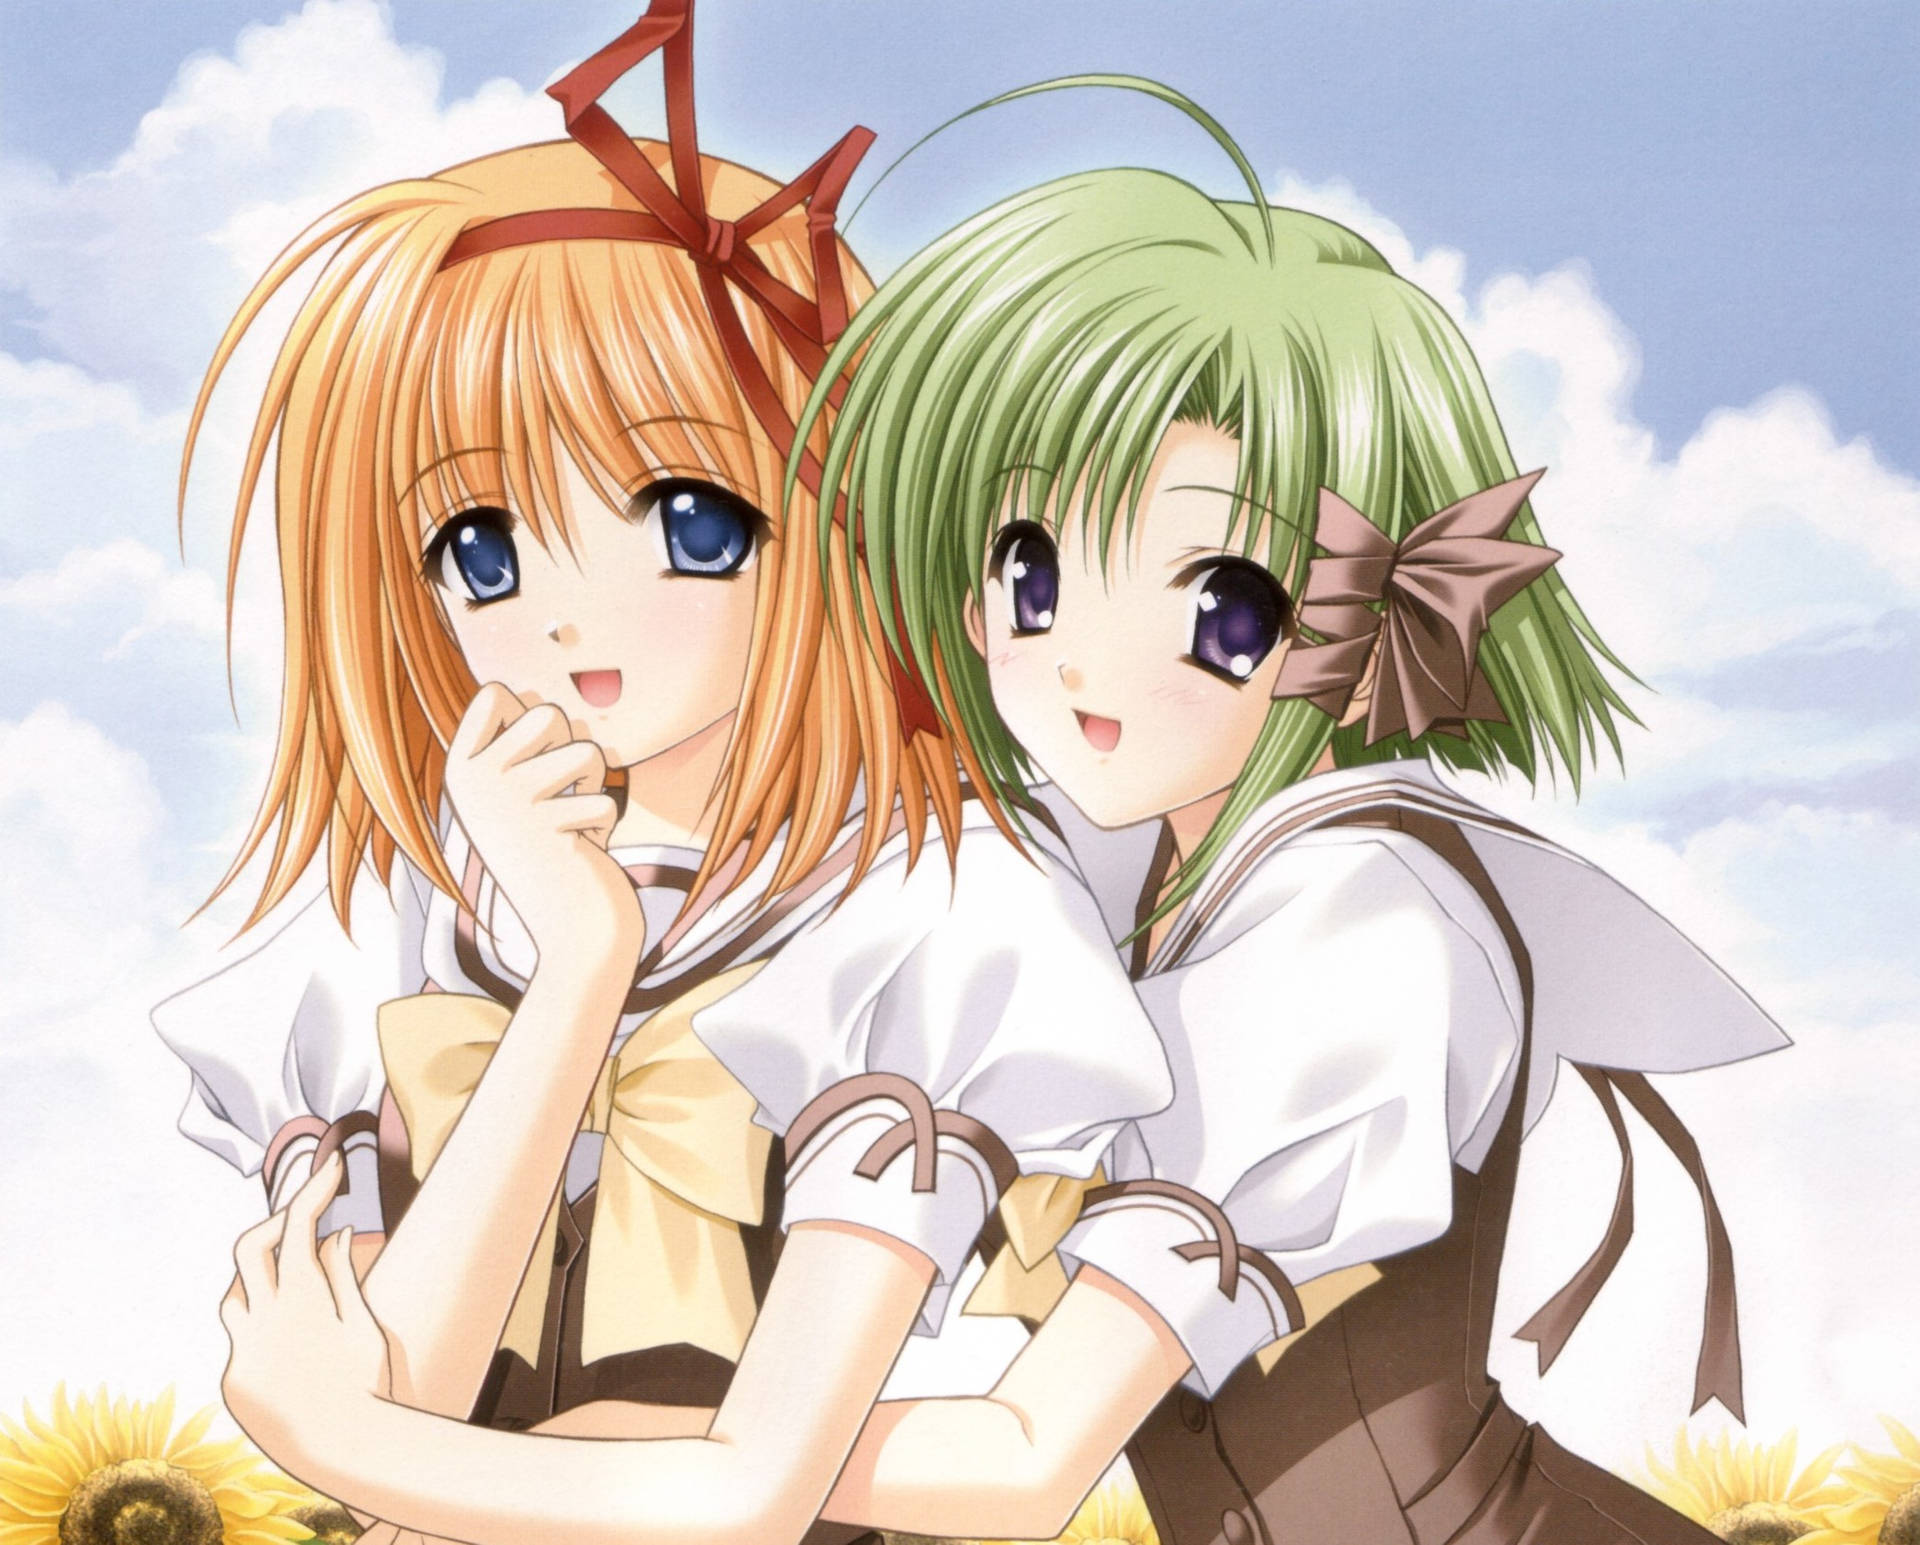 Anime Scenes on Twitter Childhood Friend vs Little Sister anime  otaku oreimo httptcoL3QSZH6Nt9  Twitter